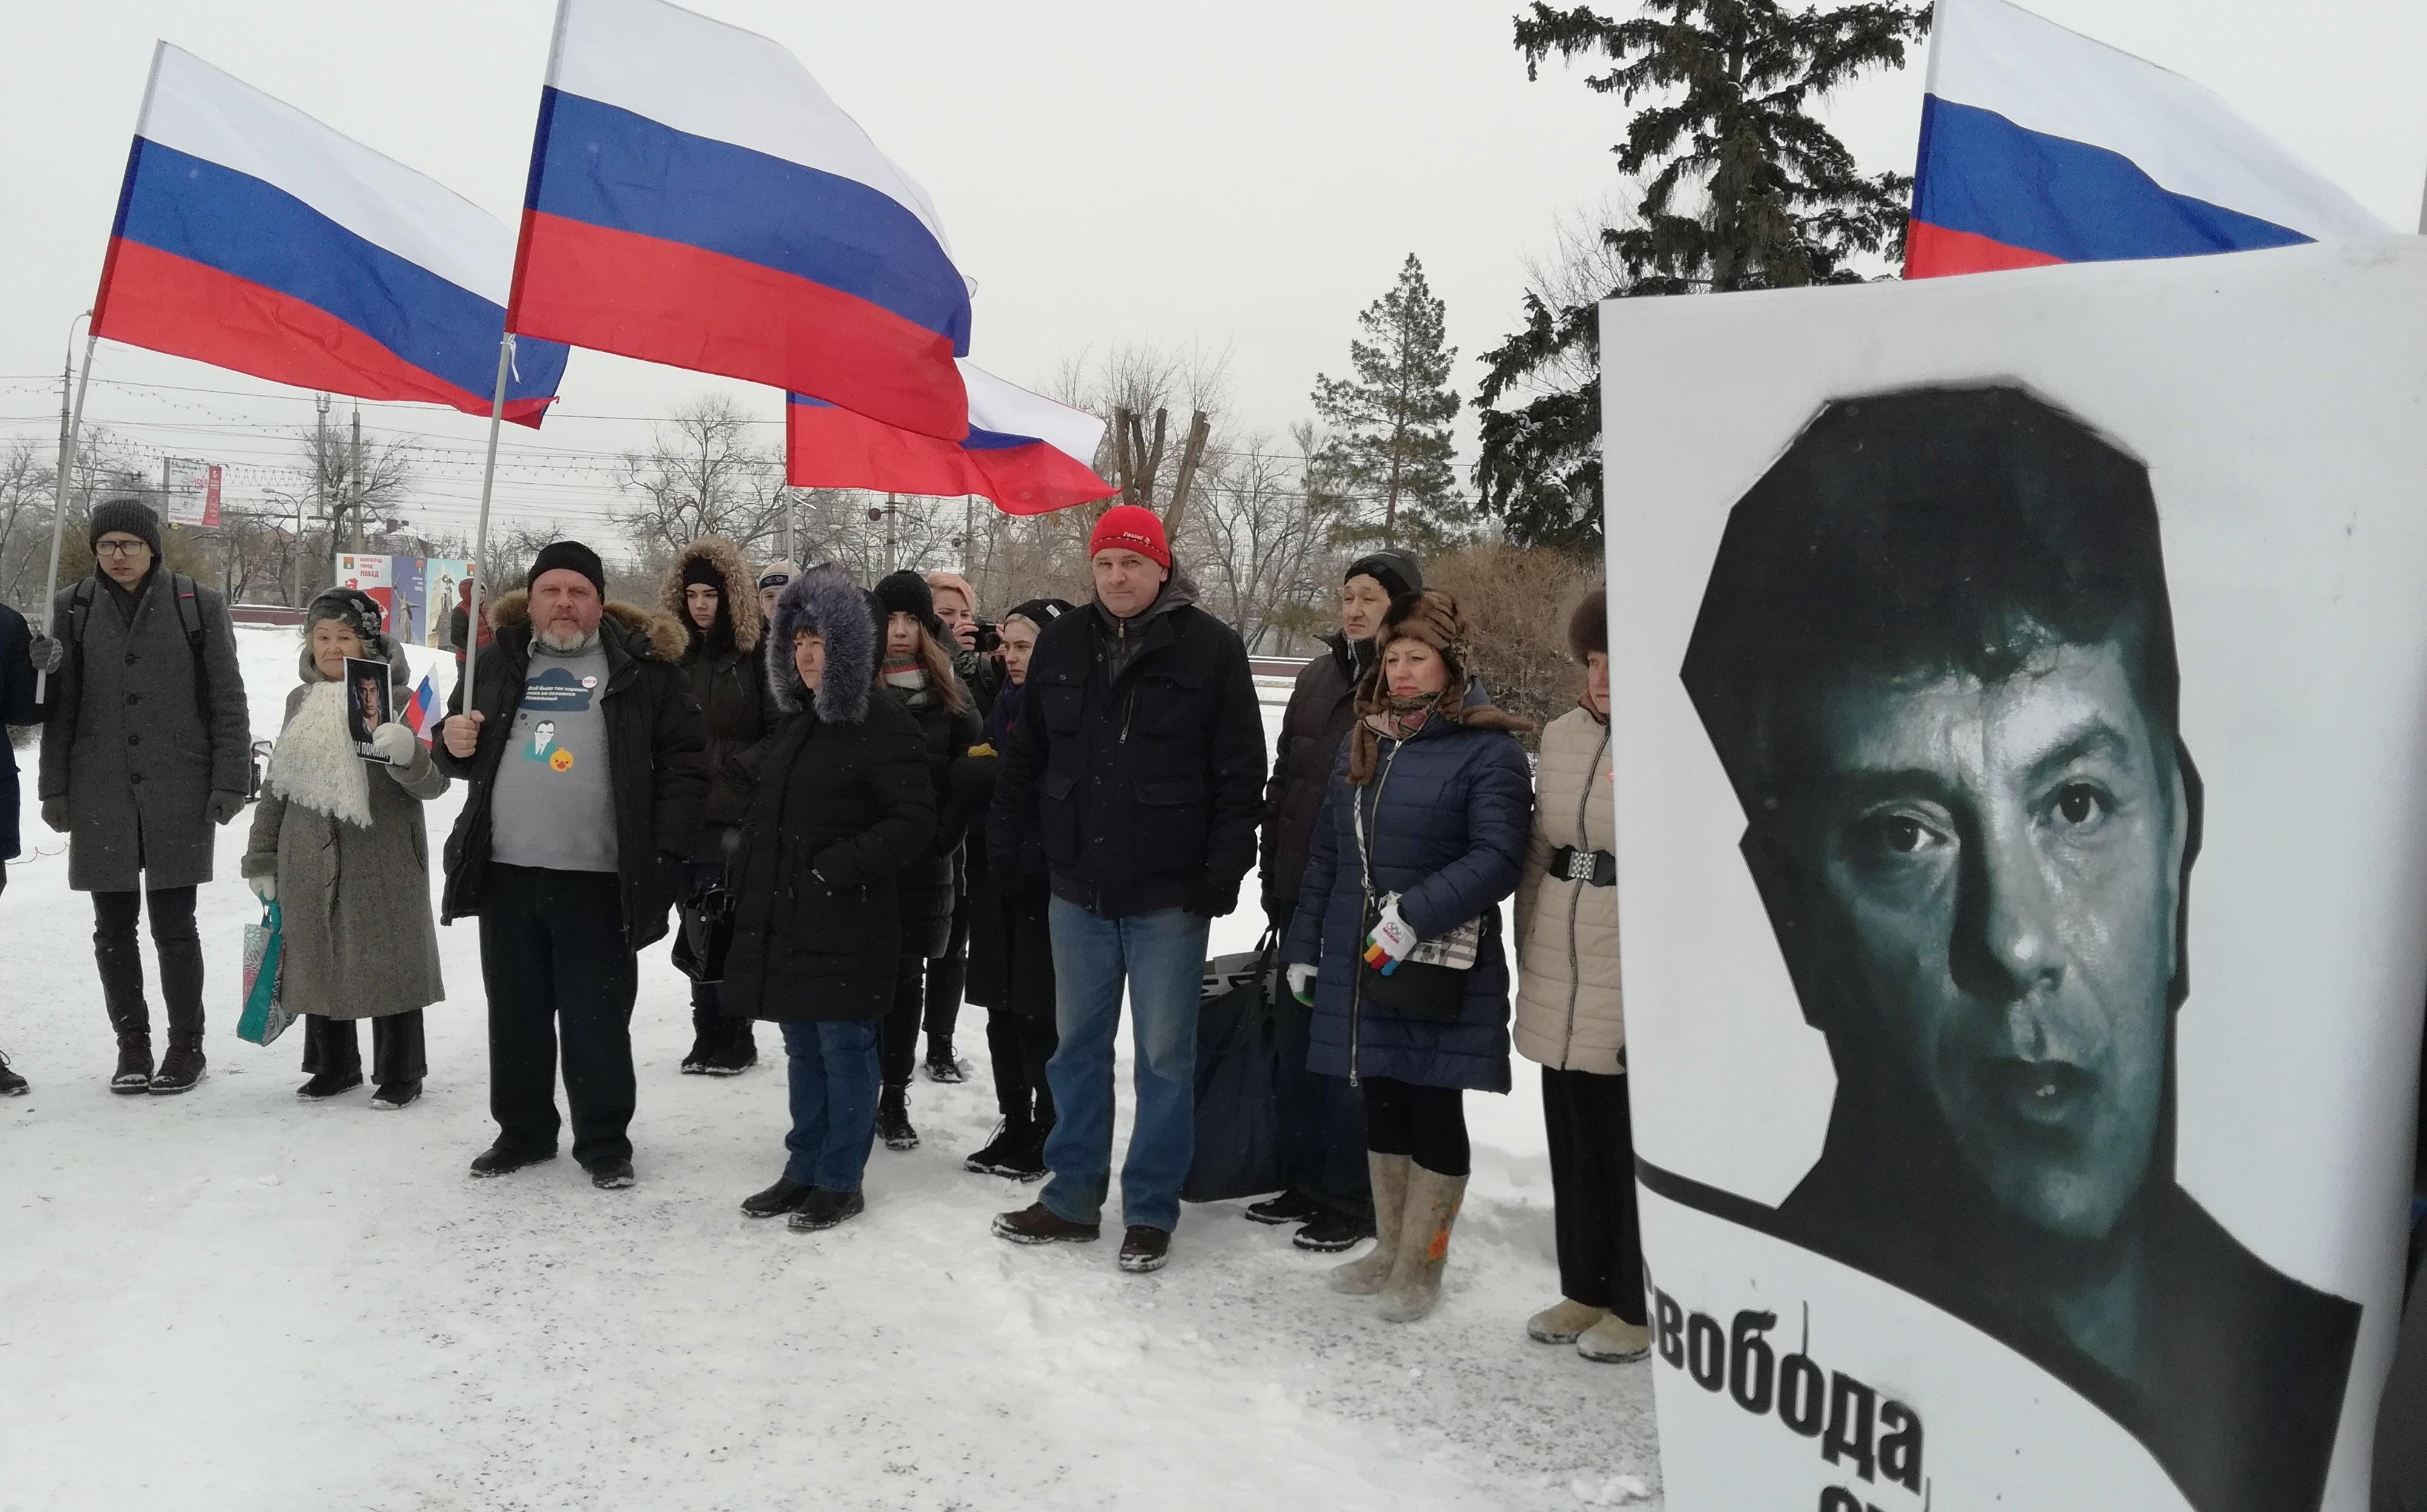 Участники митинга в память о Борисе Немцове. Волгоград, 25 февраля 2018 года. Фото Татьяны Филимоновой для "Кавказского узла"